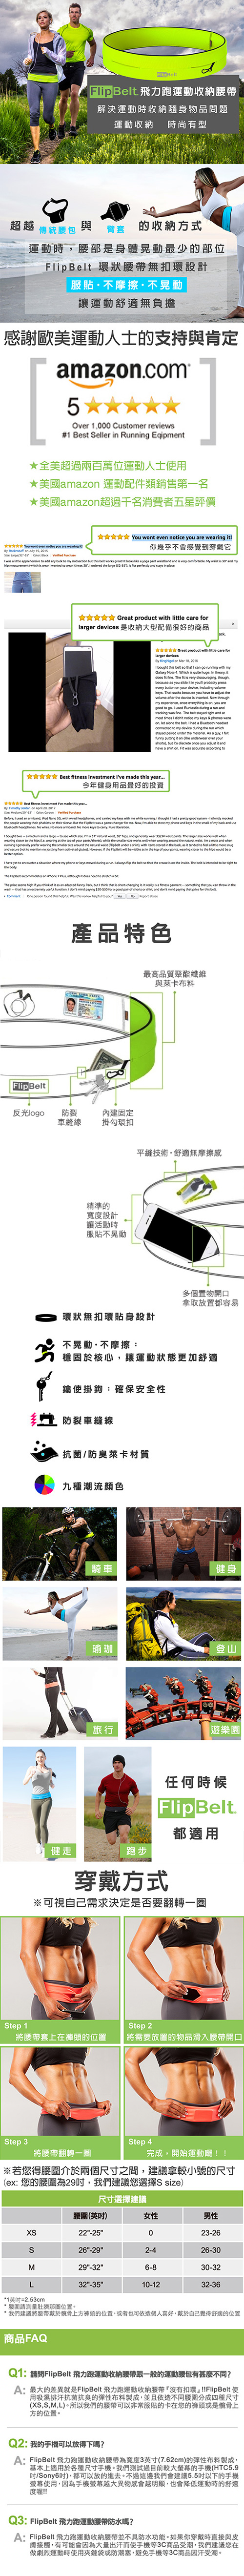 FlipBelt 飛力跑運動收納腰帶 經典款 螢光黃 (XS)